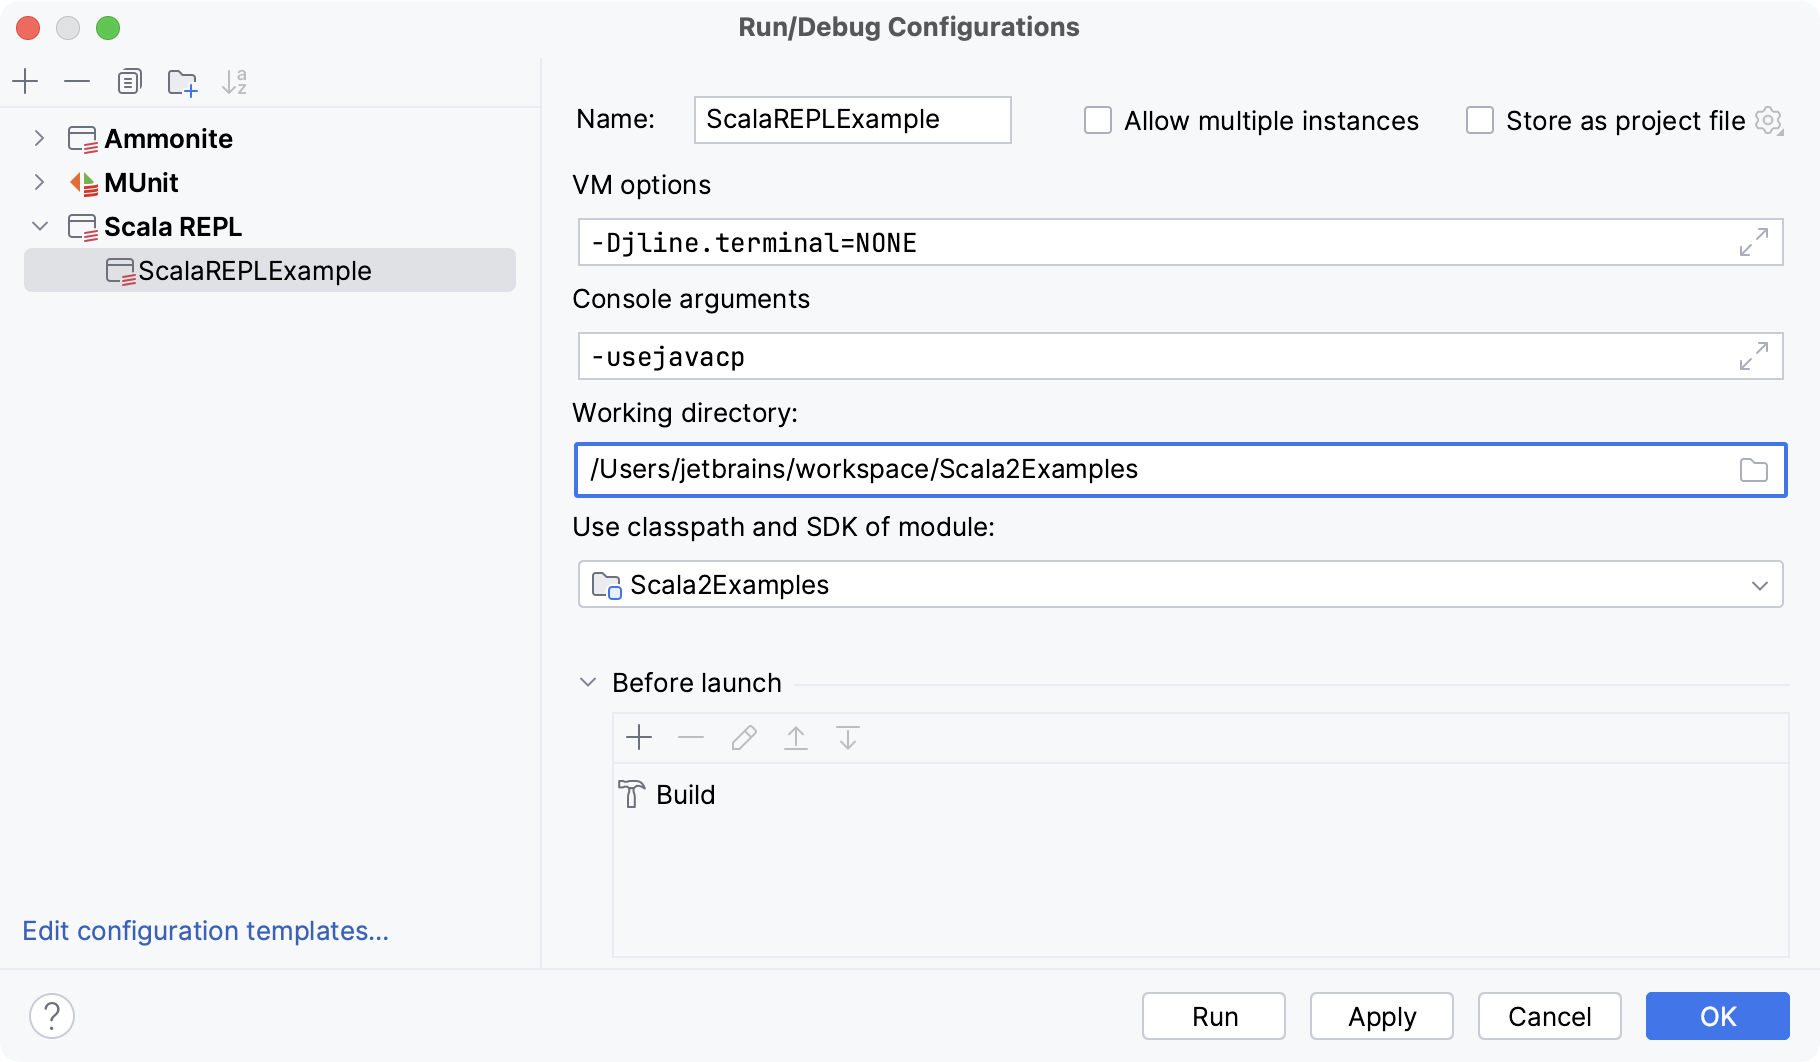 Run/Debug Configuration for Scala REPL